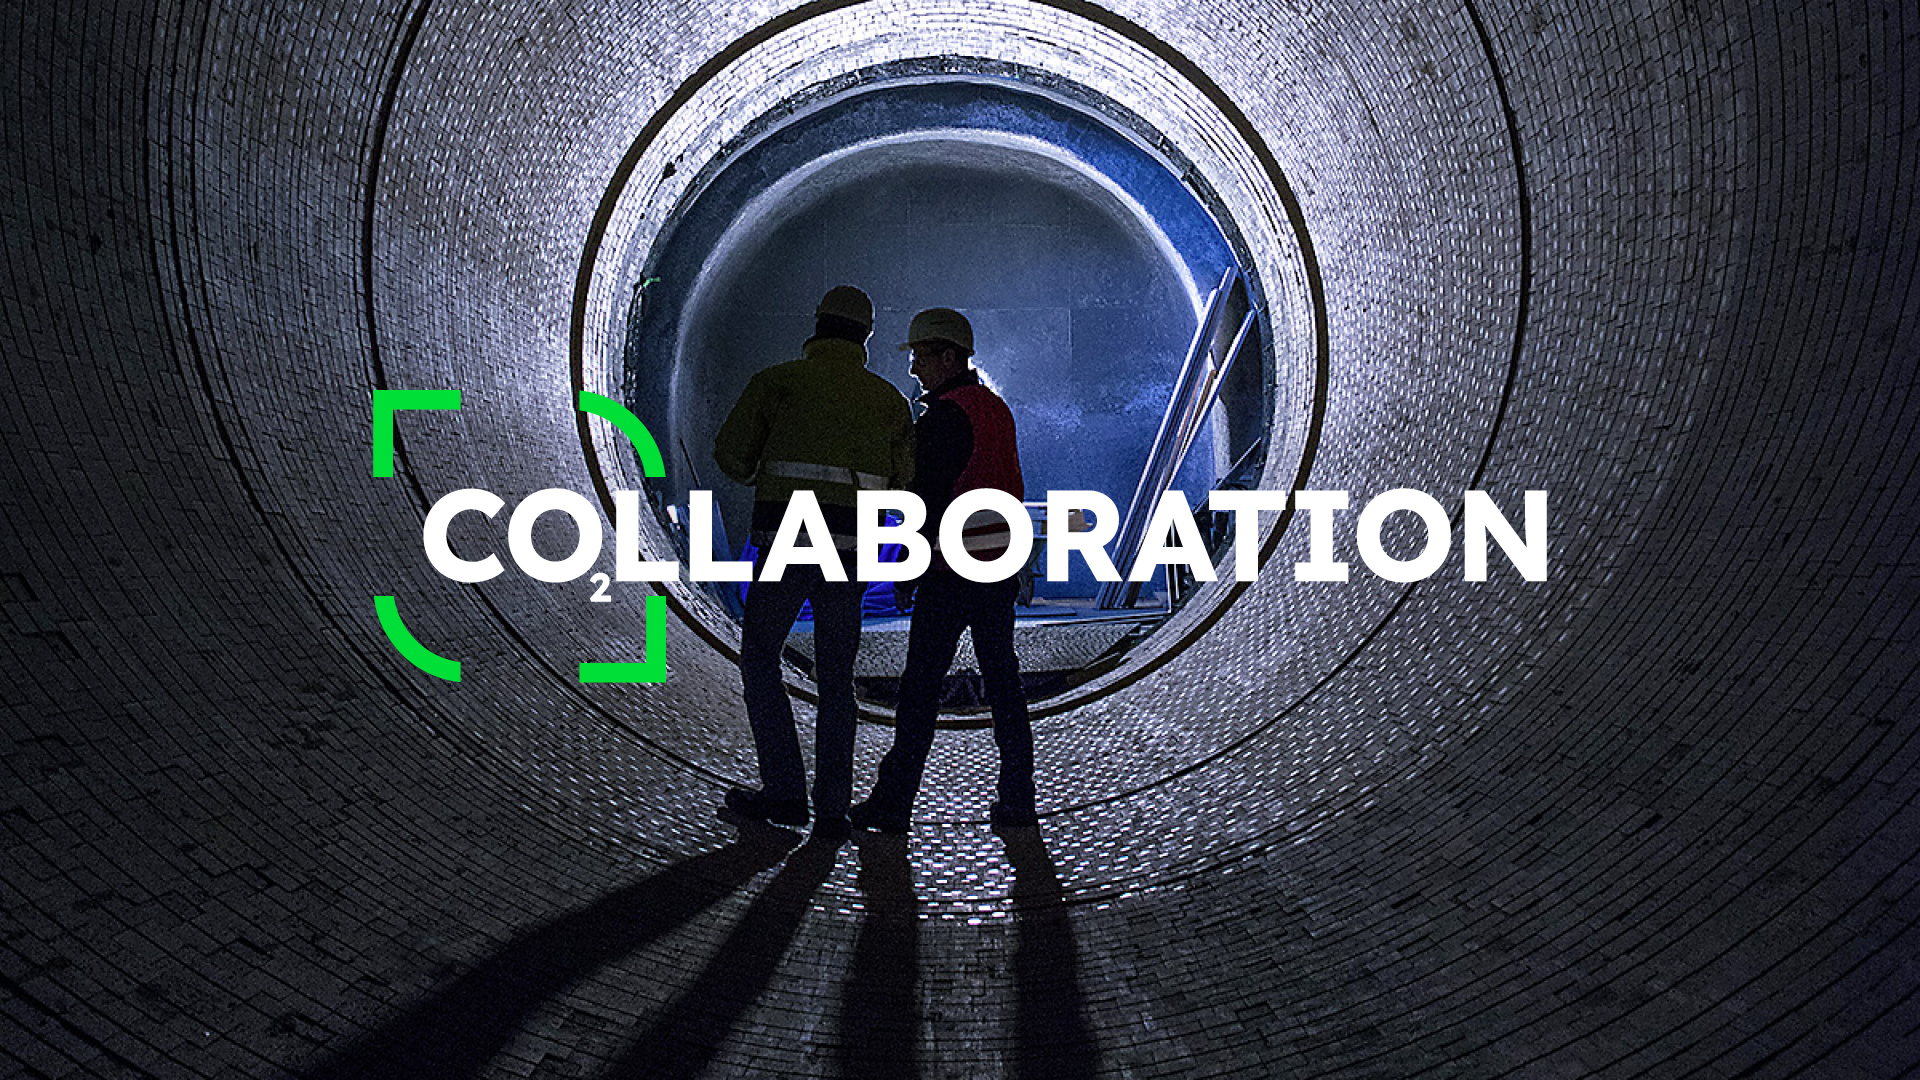 Kampagnenmotiv „Collaboration“ zum Launch der evoZero-Produkte von Heidelberg Materials.